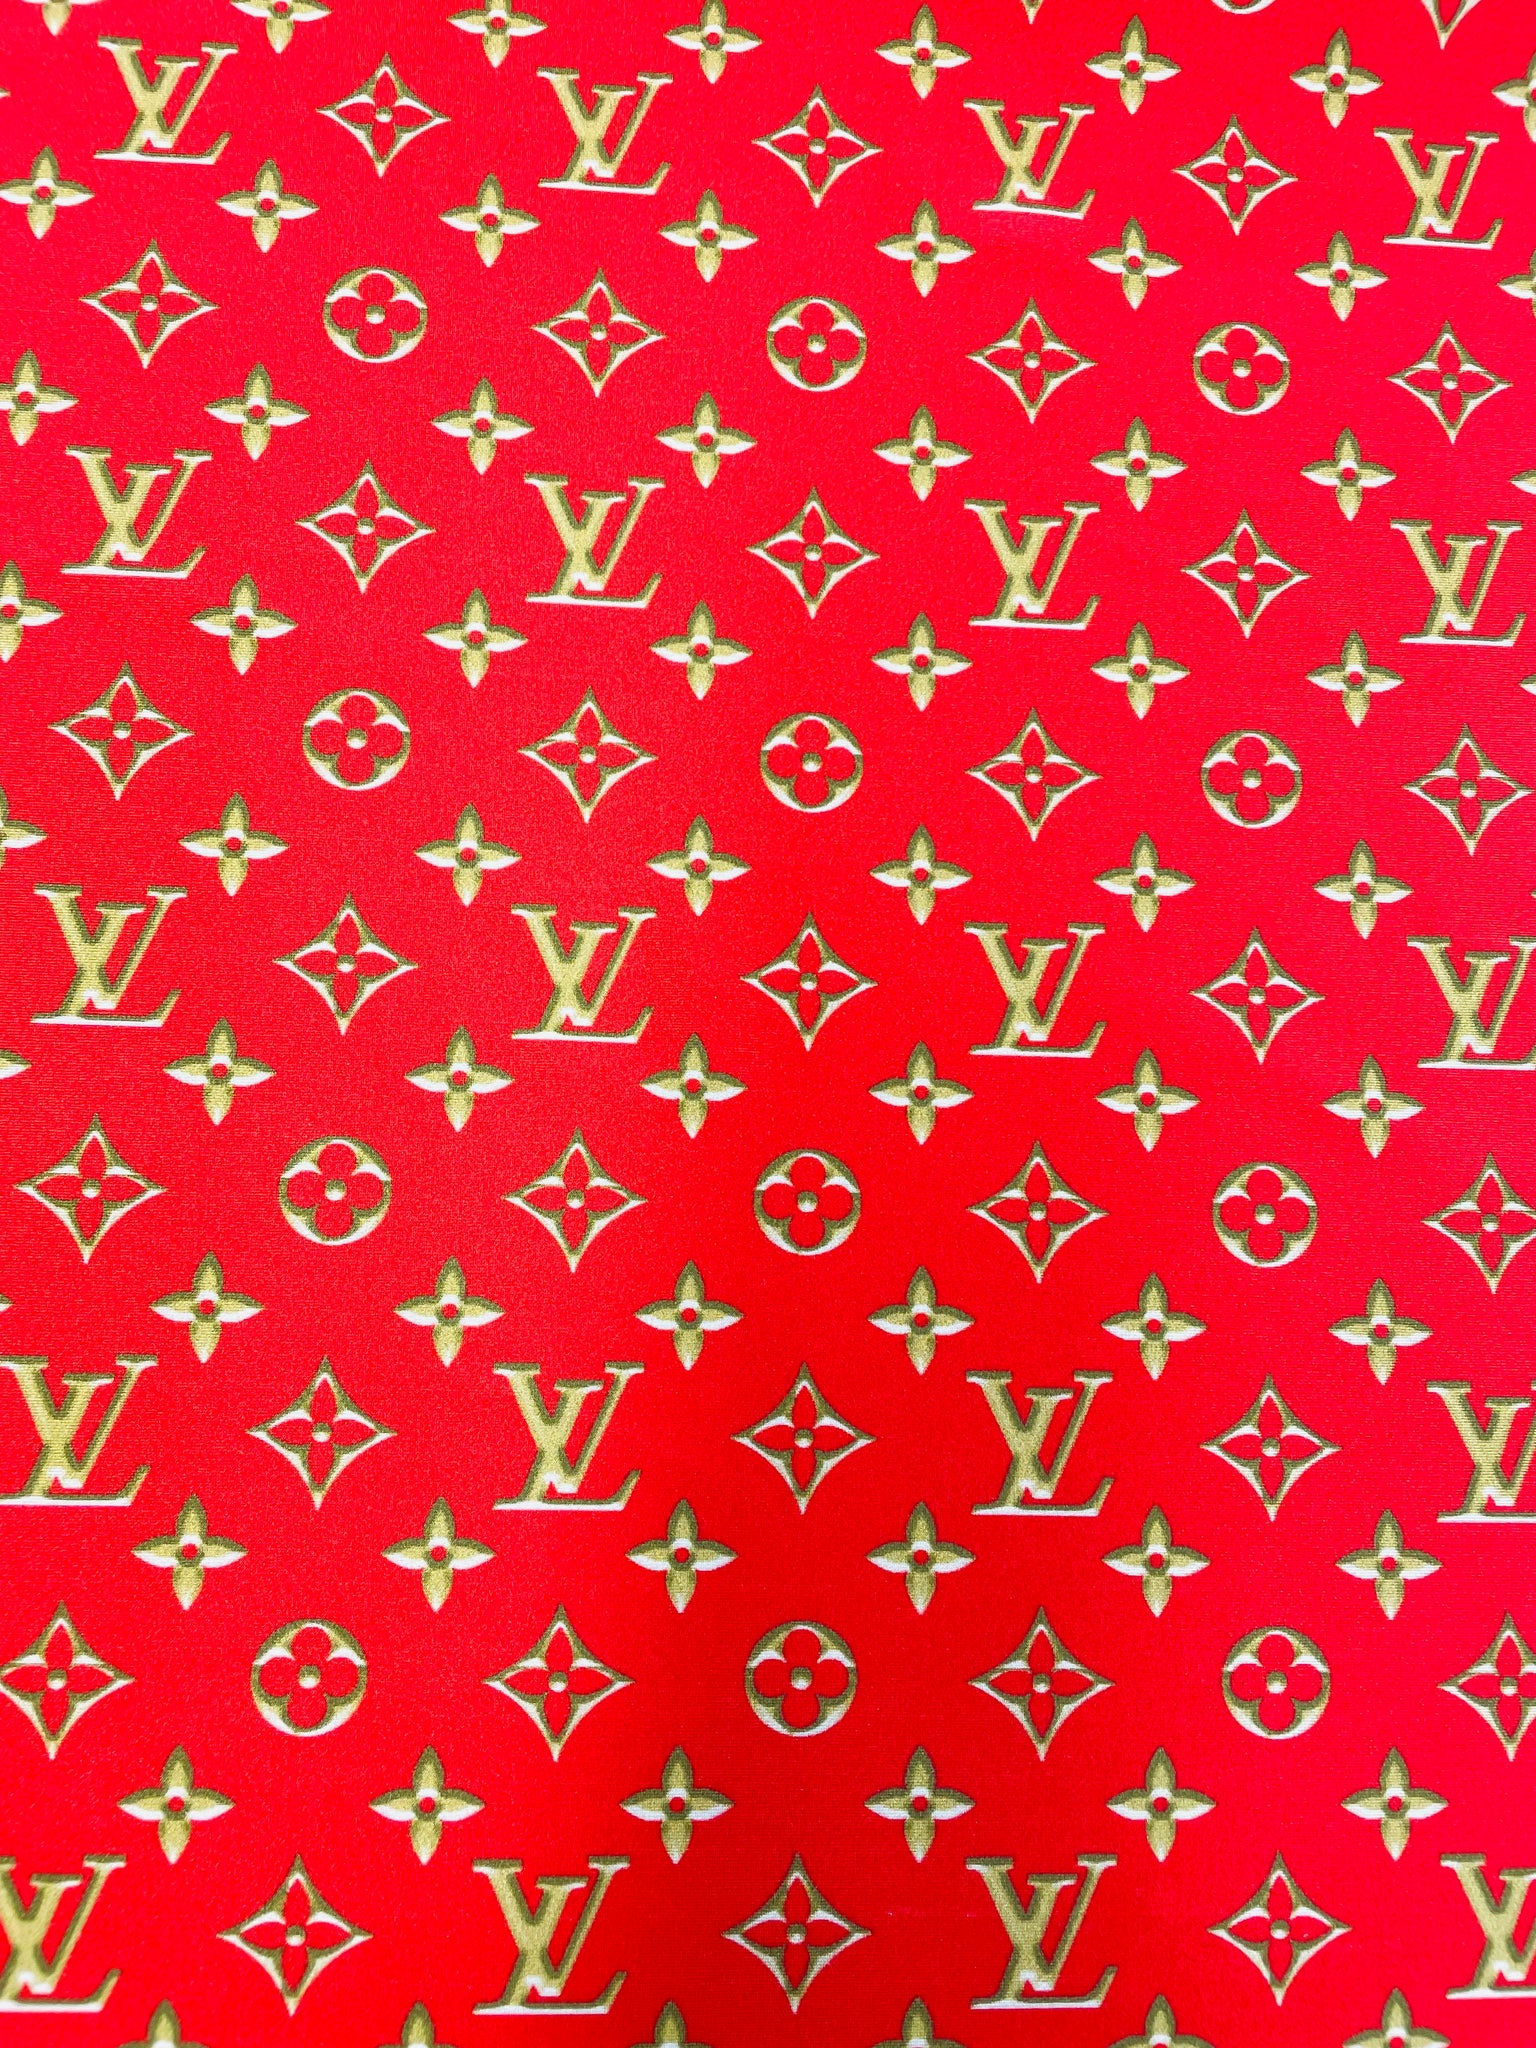 wallpaper red louis vuittons